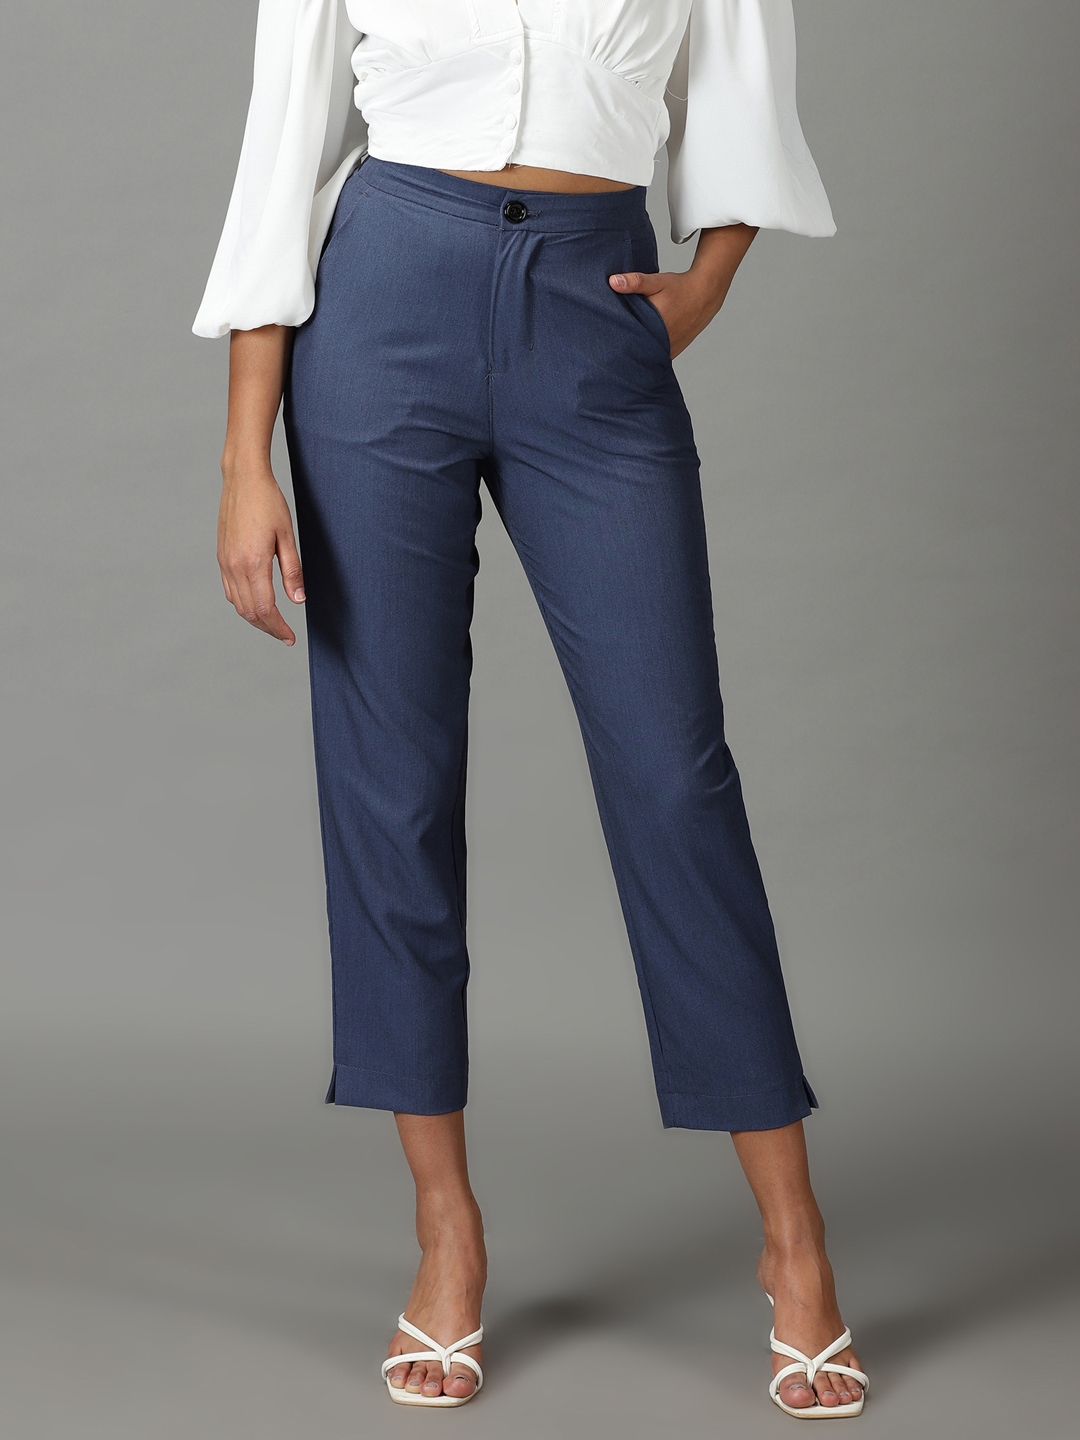 Buy Women Blue Solid Casual Slim Fit Trousers Online  866148  Van Heusen